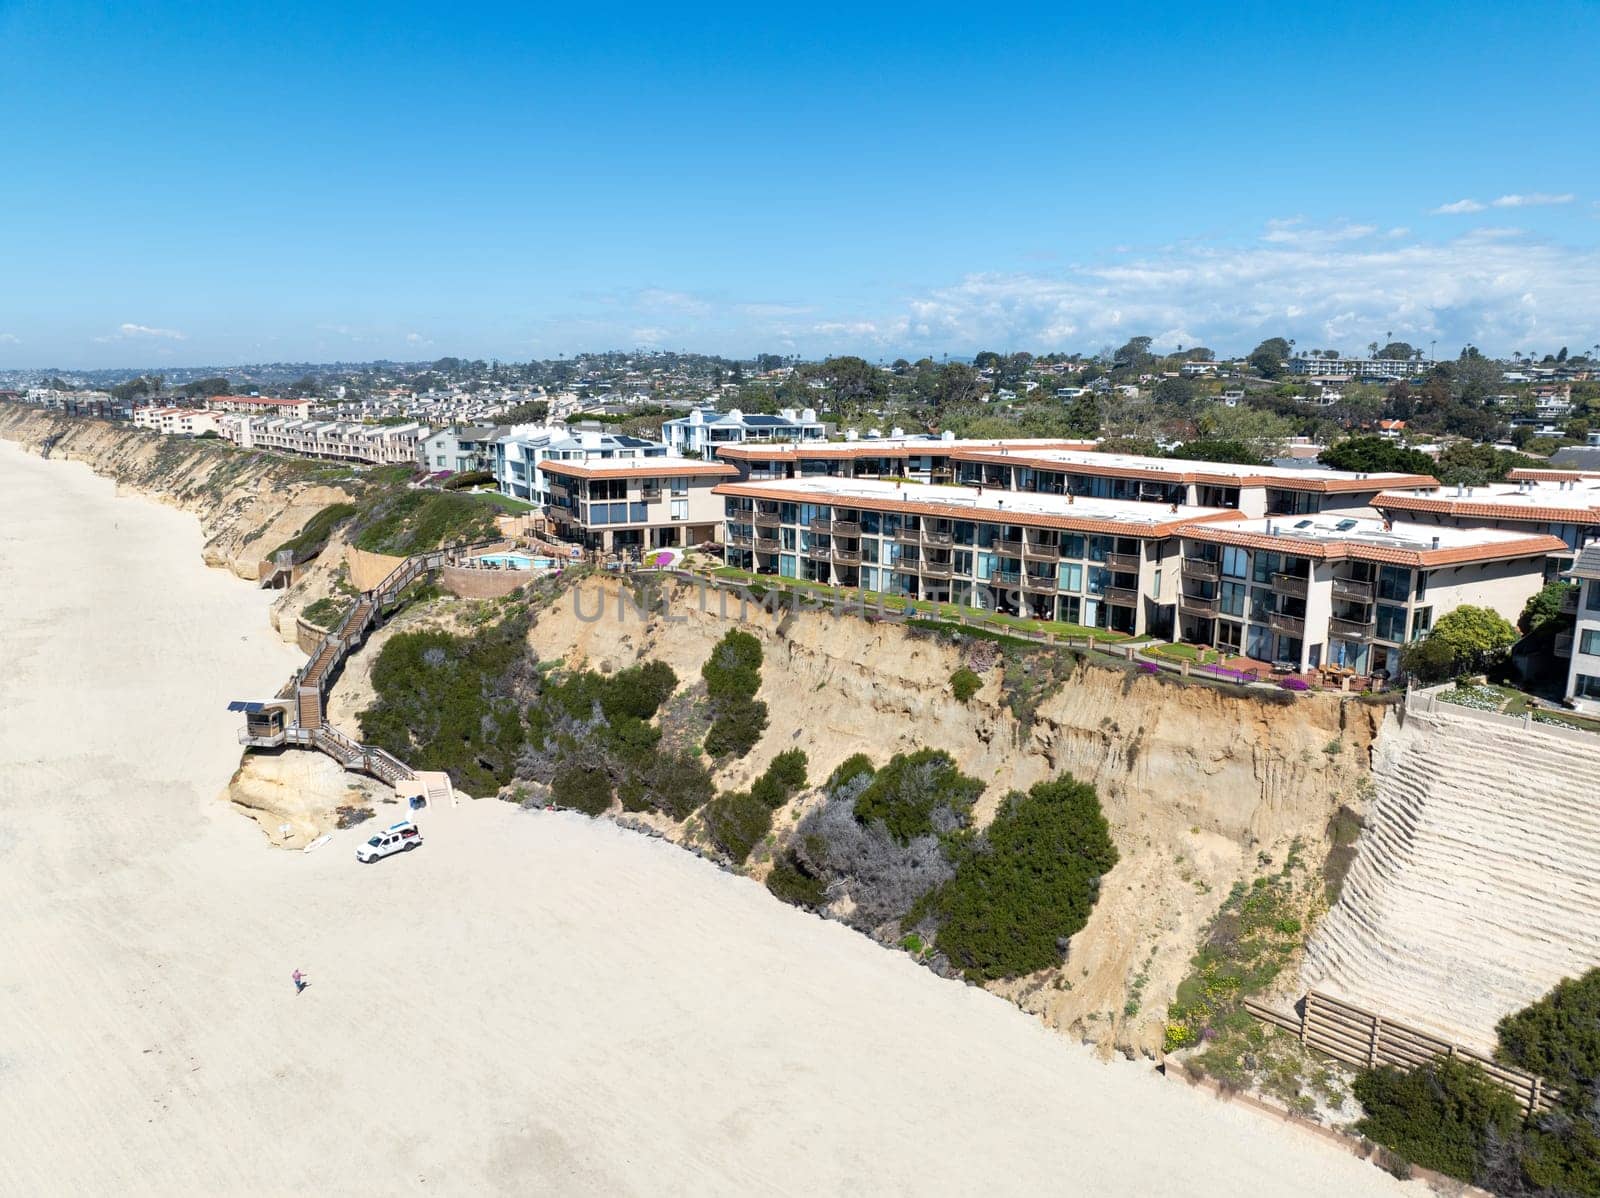 Aerial view of Del Mar Shores in San Diego, CA by Bonandbon